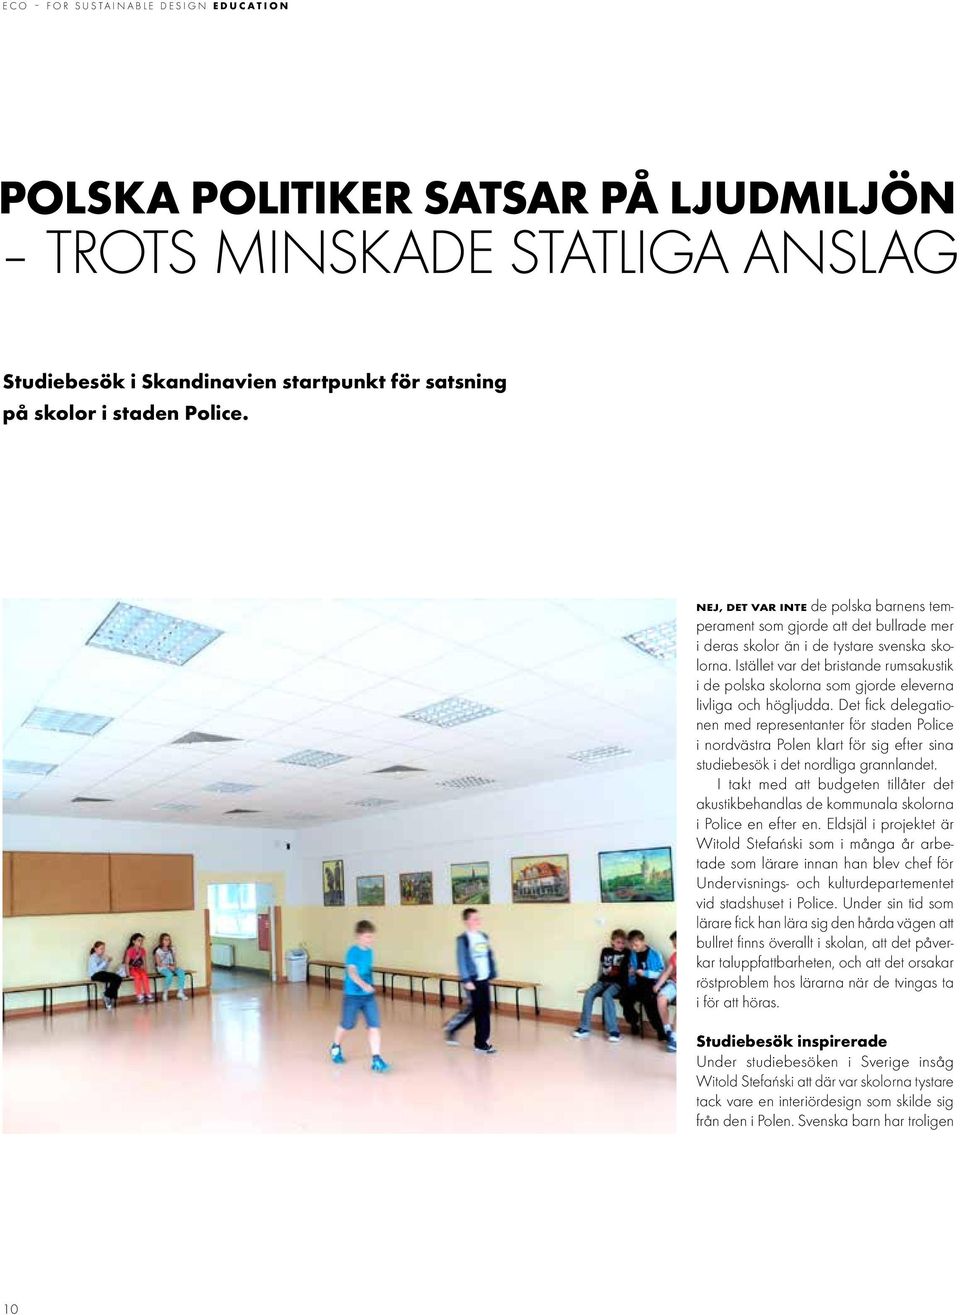 Istället var det bristande rumsakustik i de polska skolorna som gjorde eleverna livliga och högljudda.